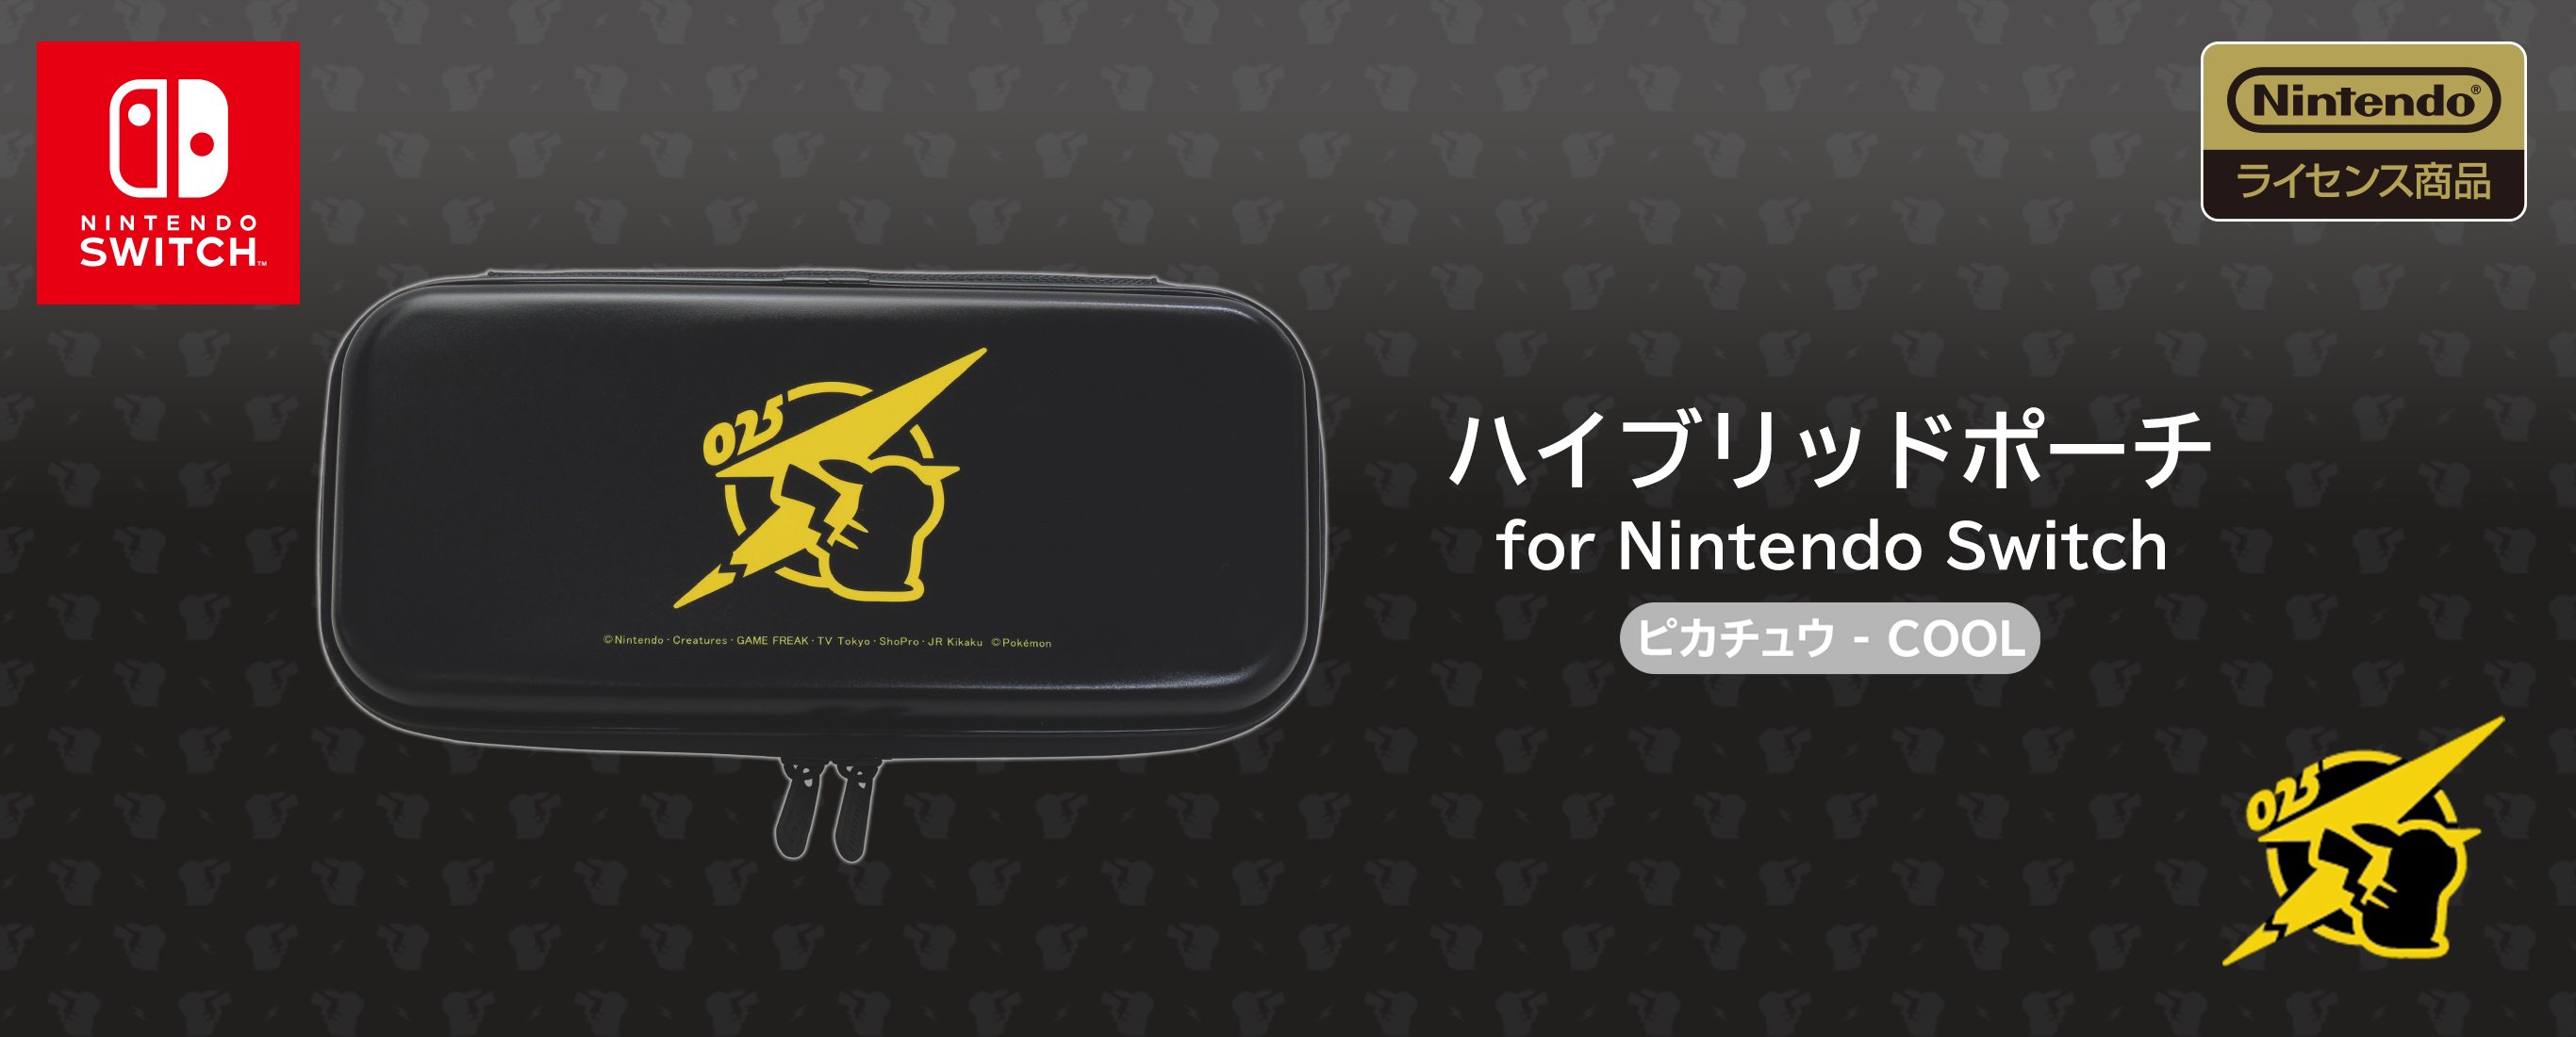 株式会社 Hori ハイブリッドポーチ For Nintendo Switch ピカチュウ Cool